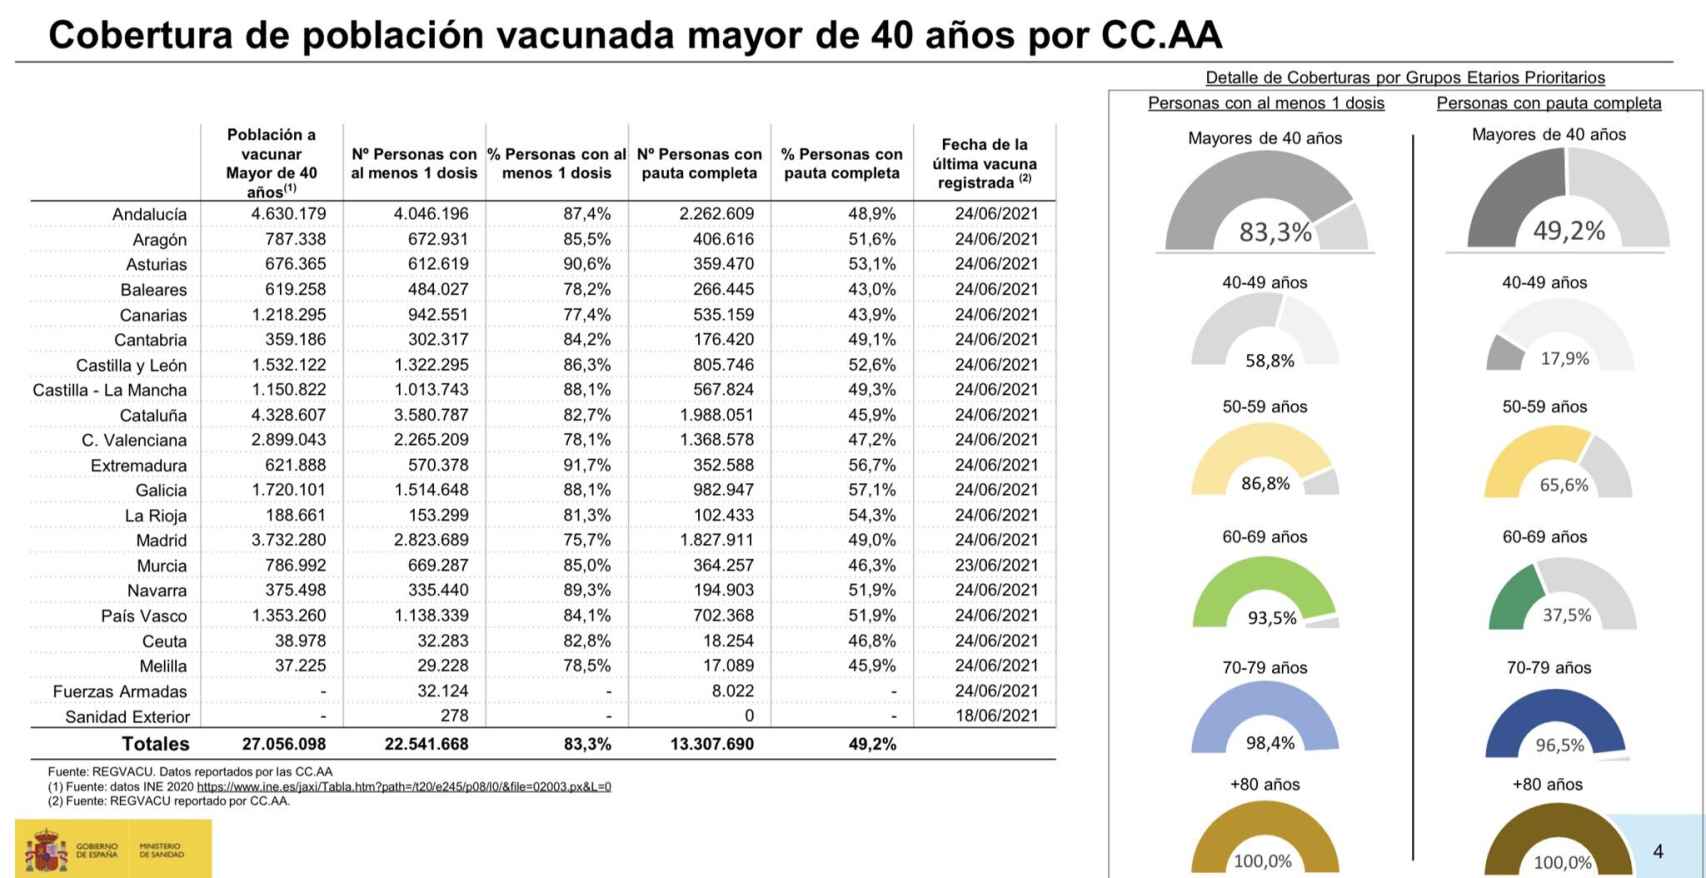 Cobertura vacunal de personas de más de 40 años en España.